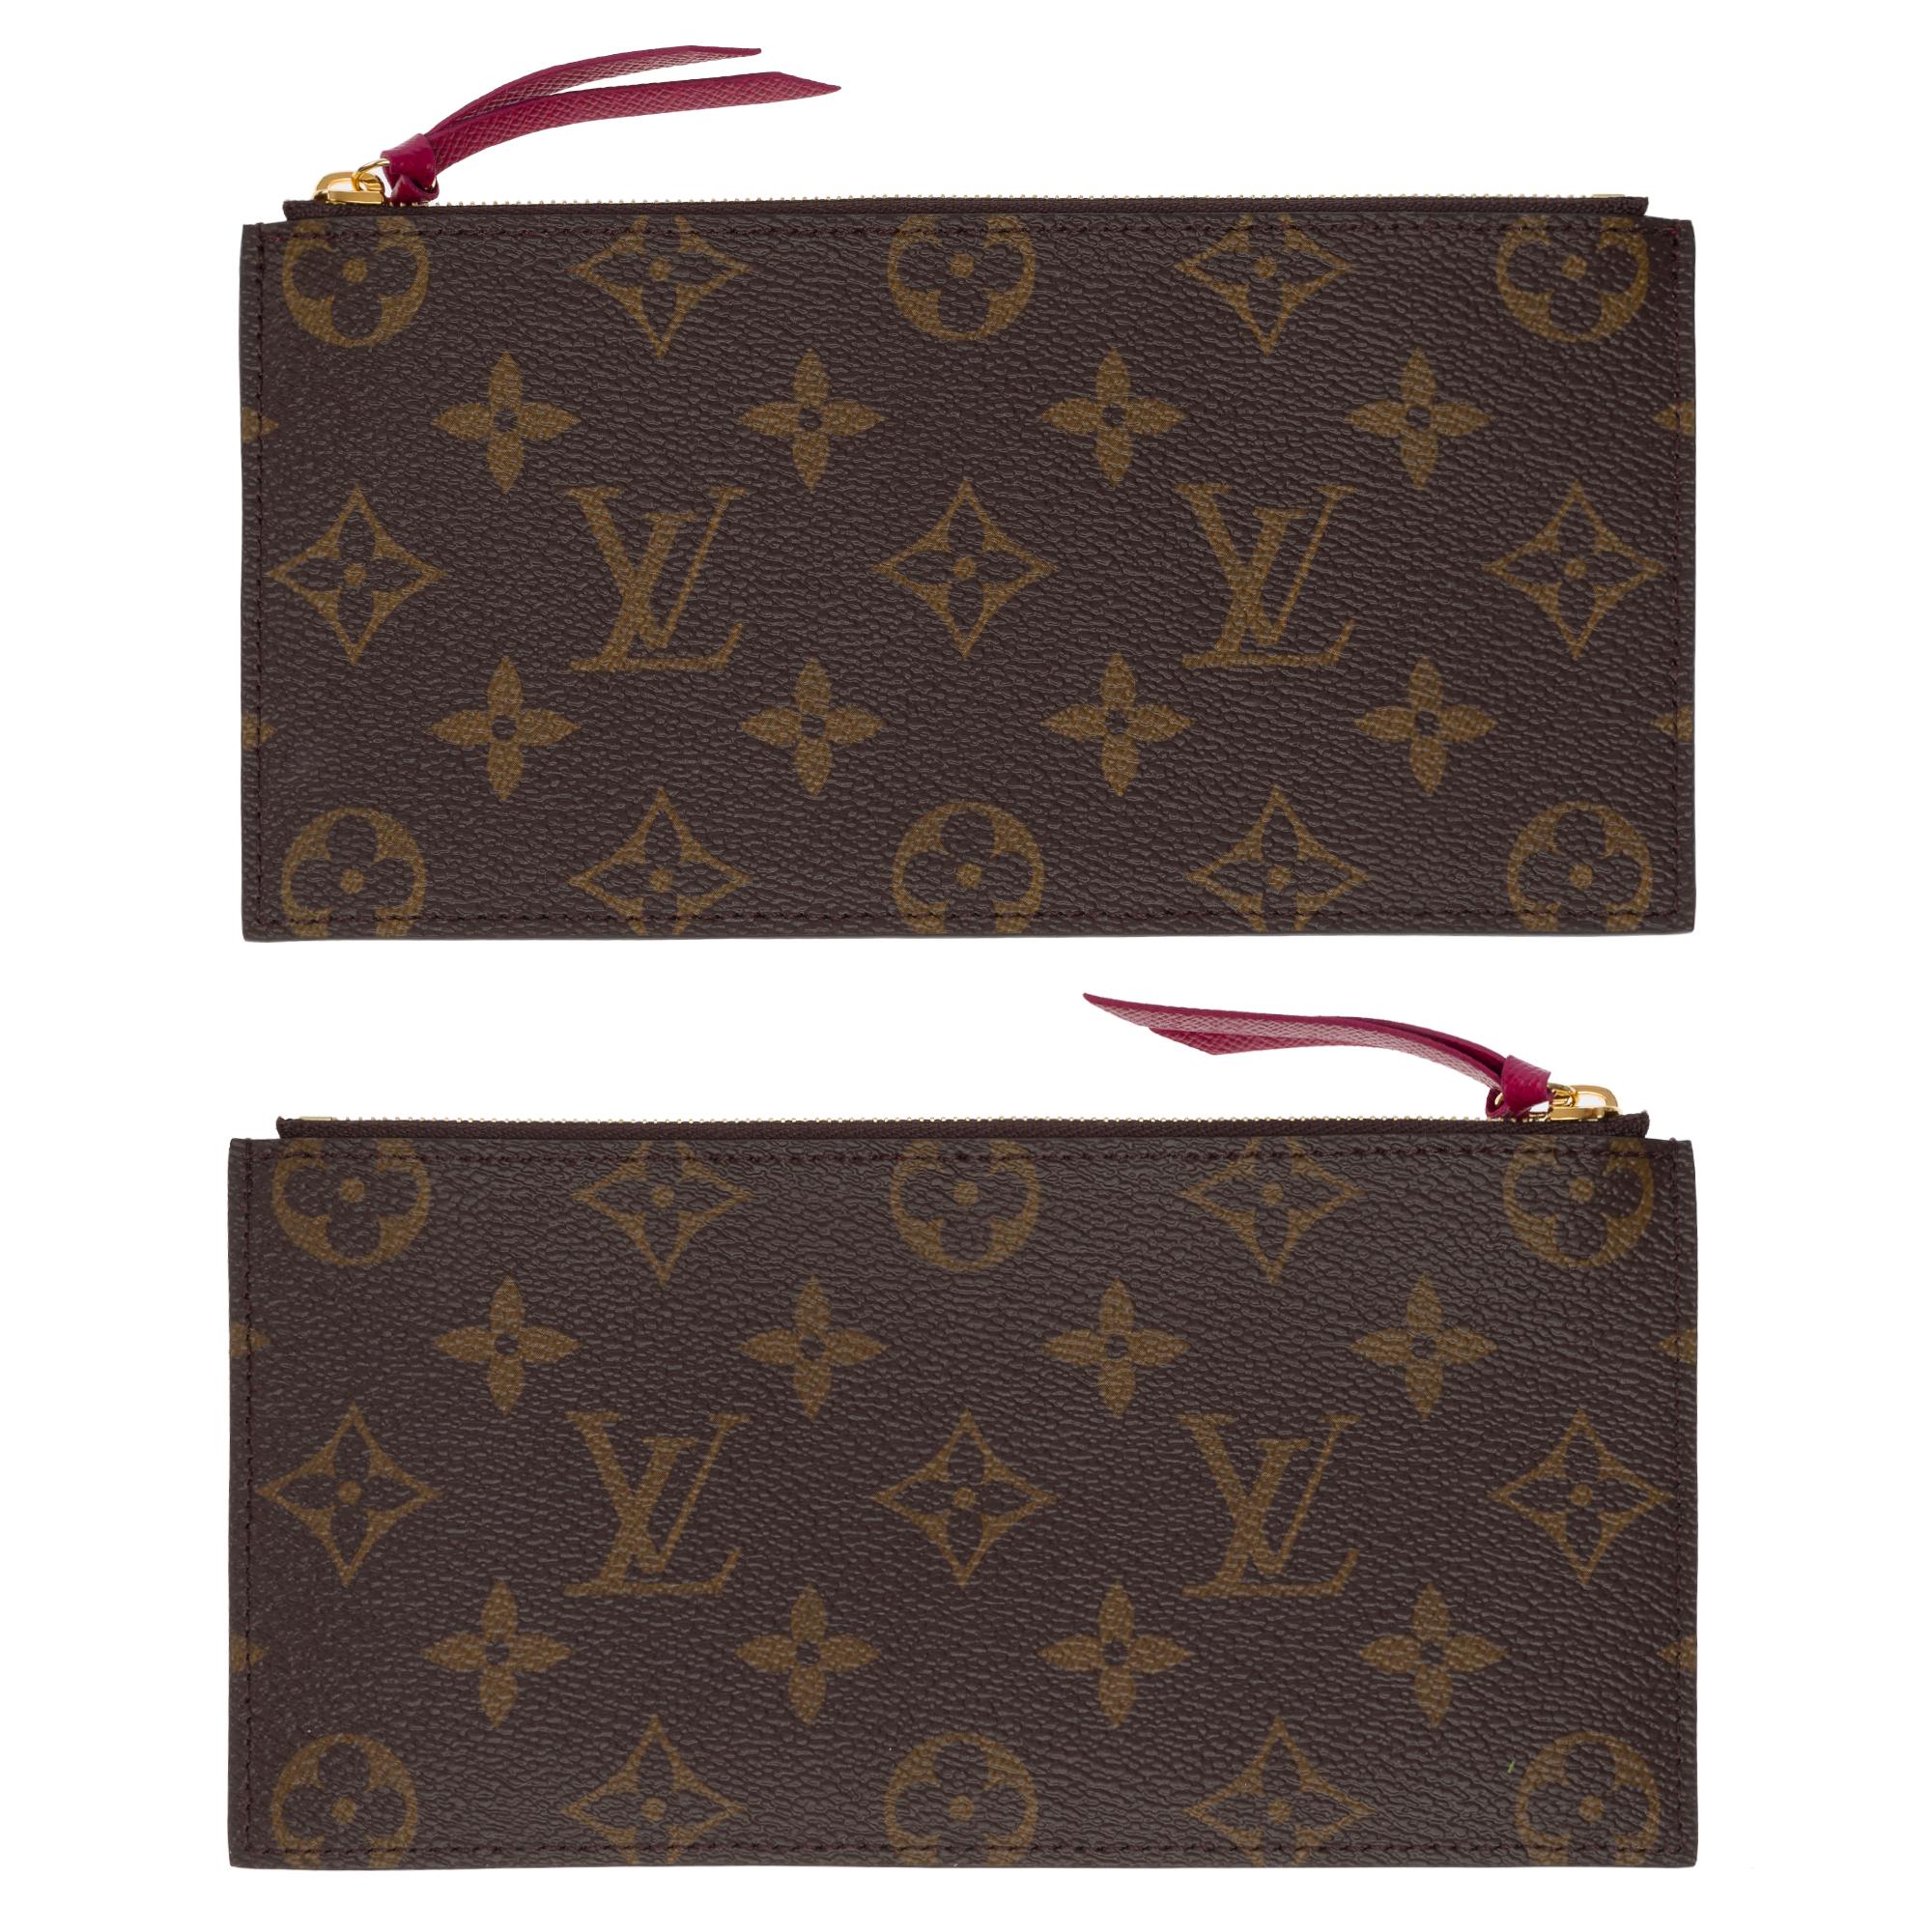 Louis Vuitton Felicie Pochette shoulder bag in Brown Monogram Canvas, GHW 11